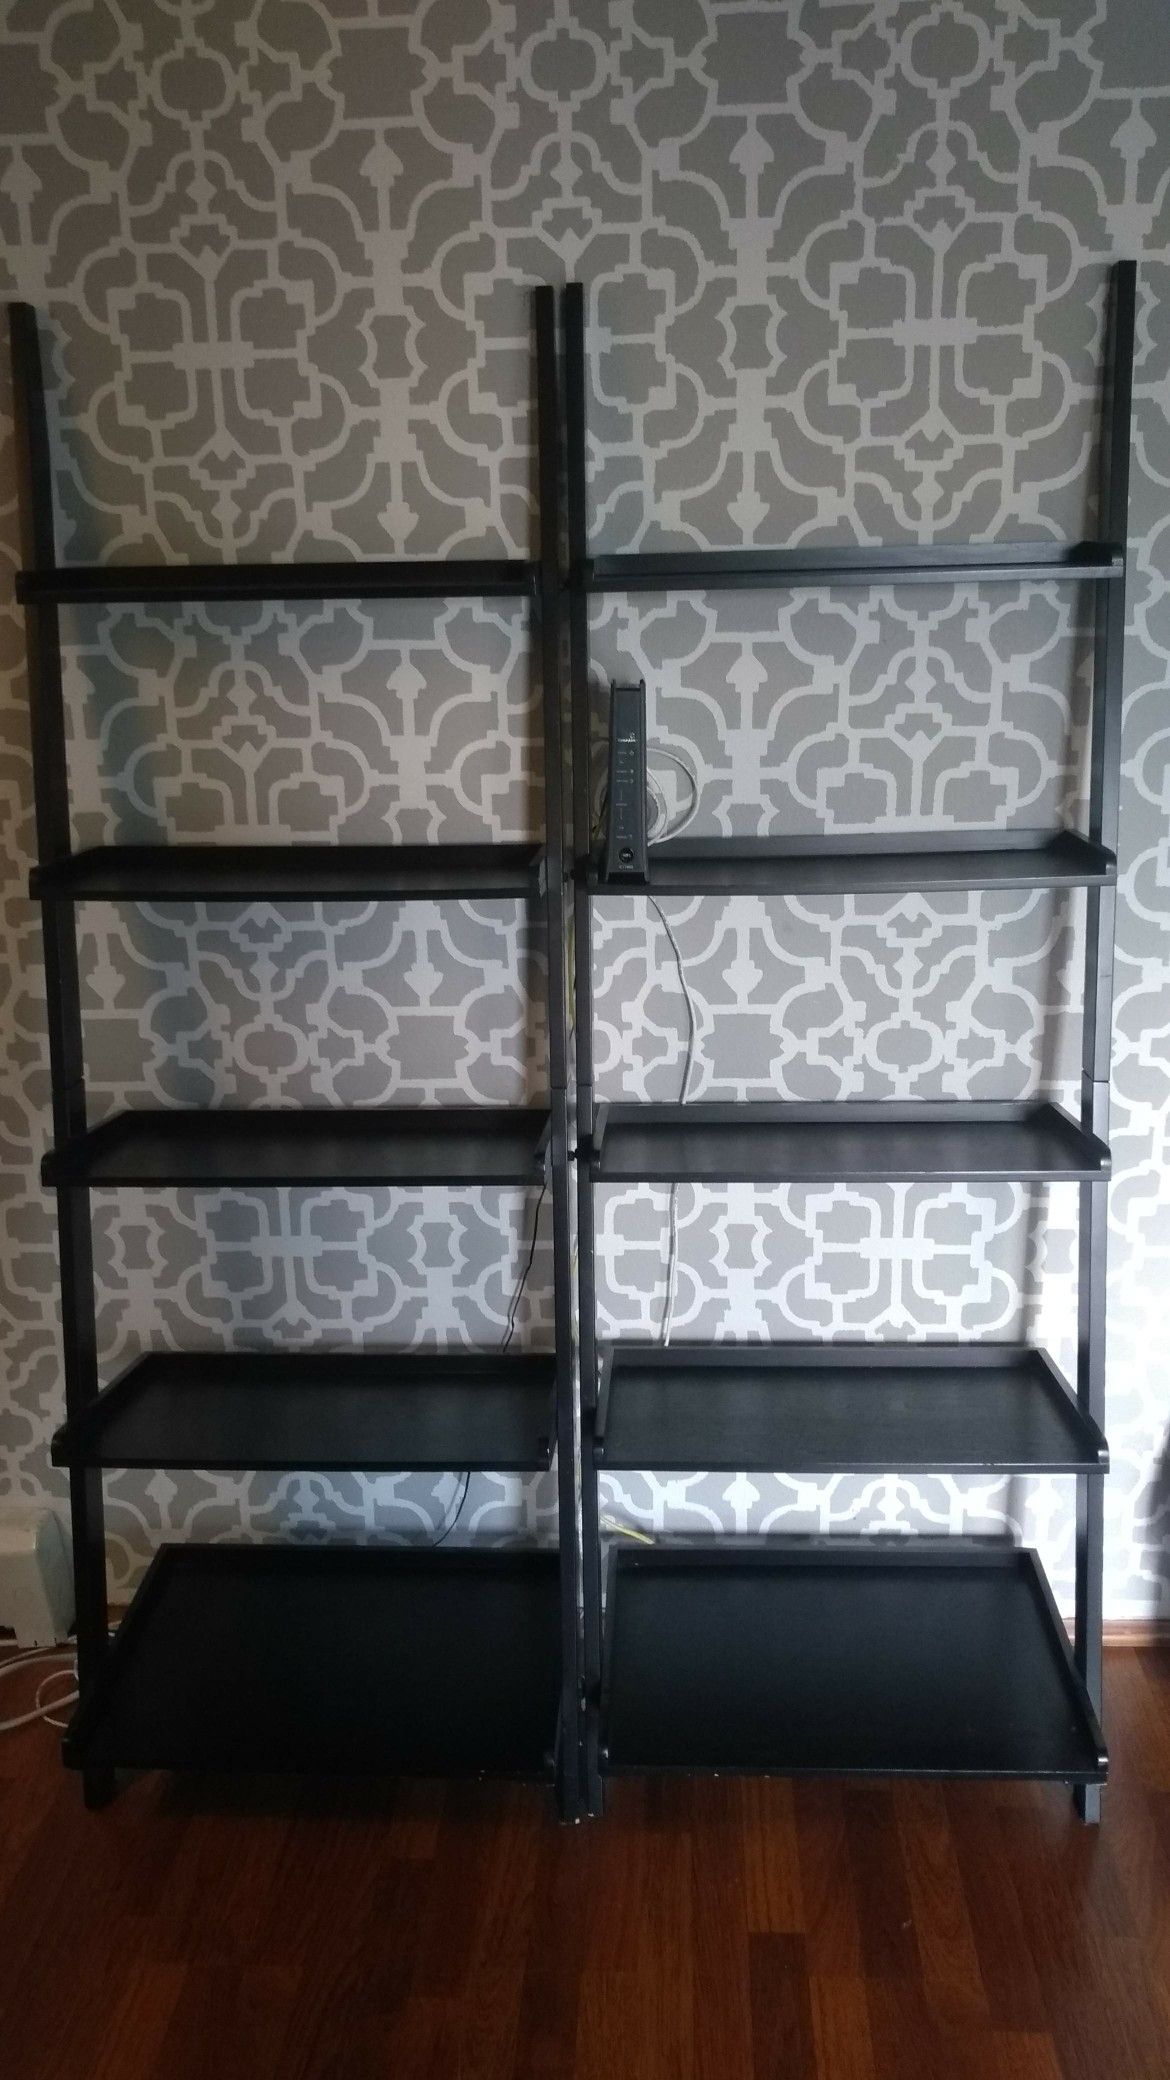 Ladder shelves